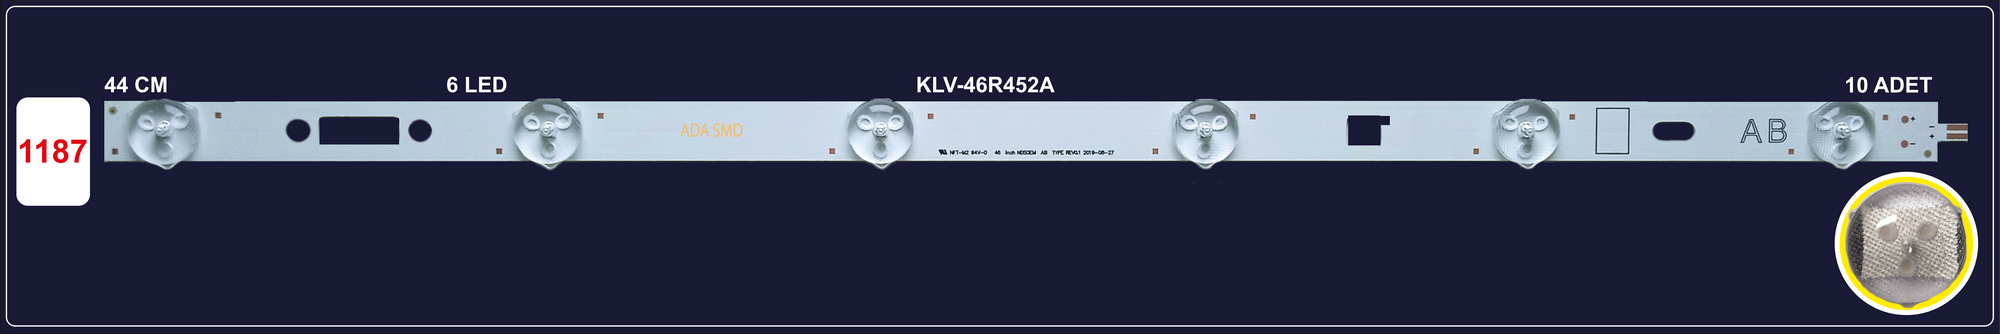 SONY KLV-46R452A